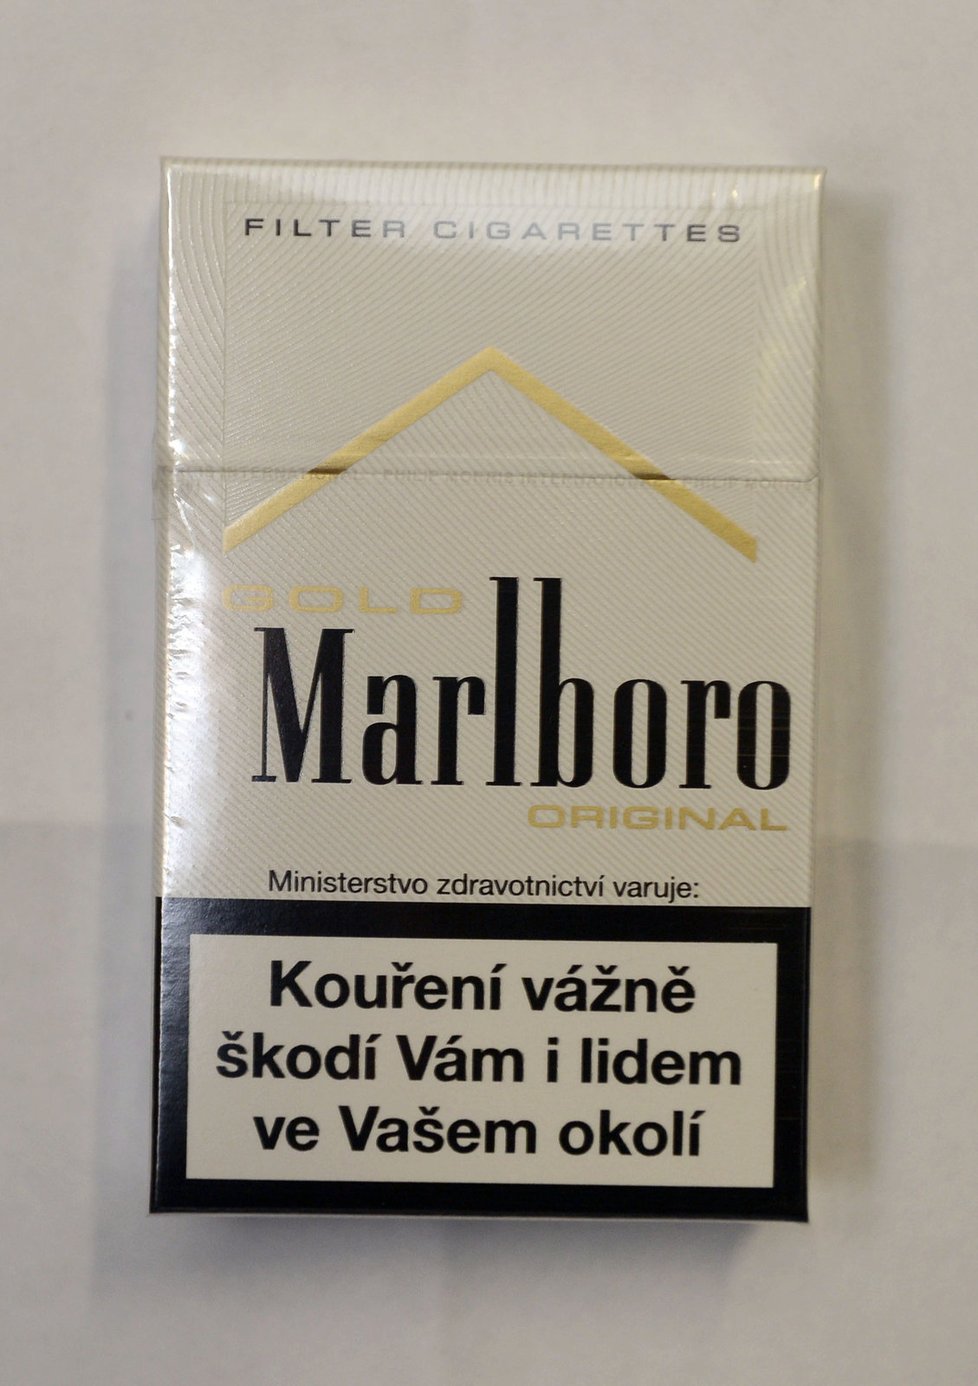 Konec „hezkým“ cigaretám: Drastické obrázky na krabičkách i v ČR